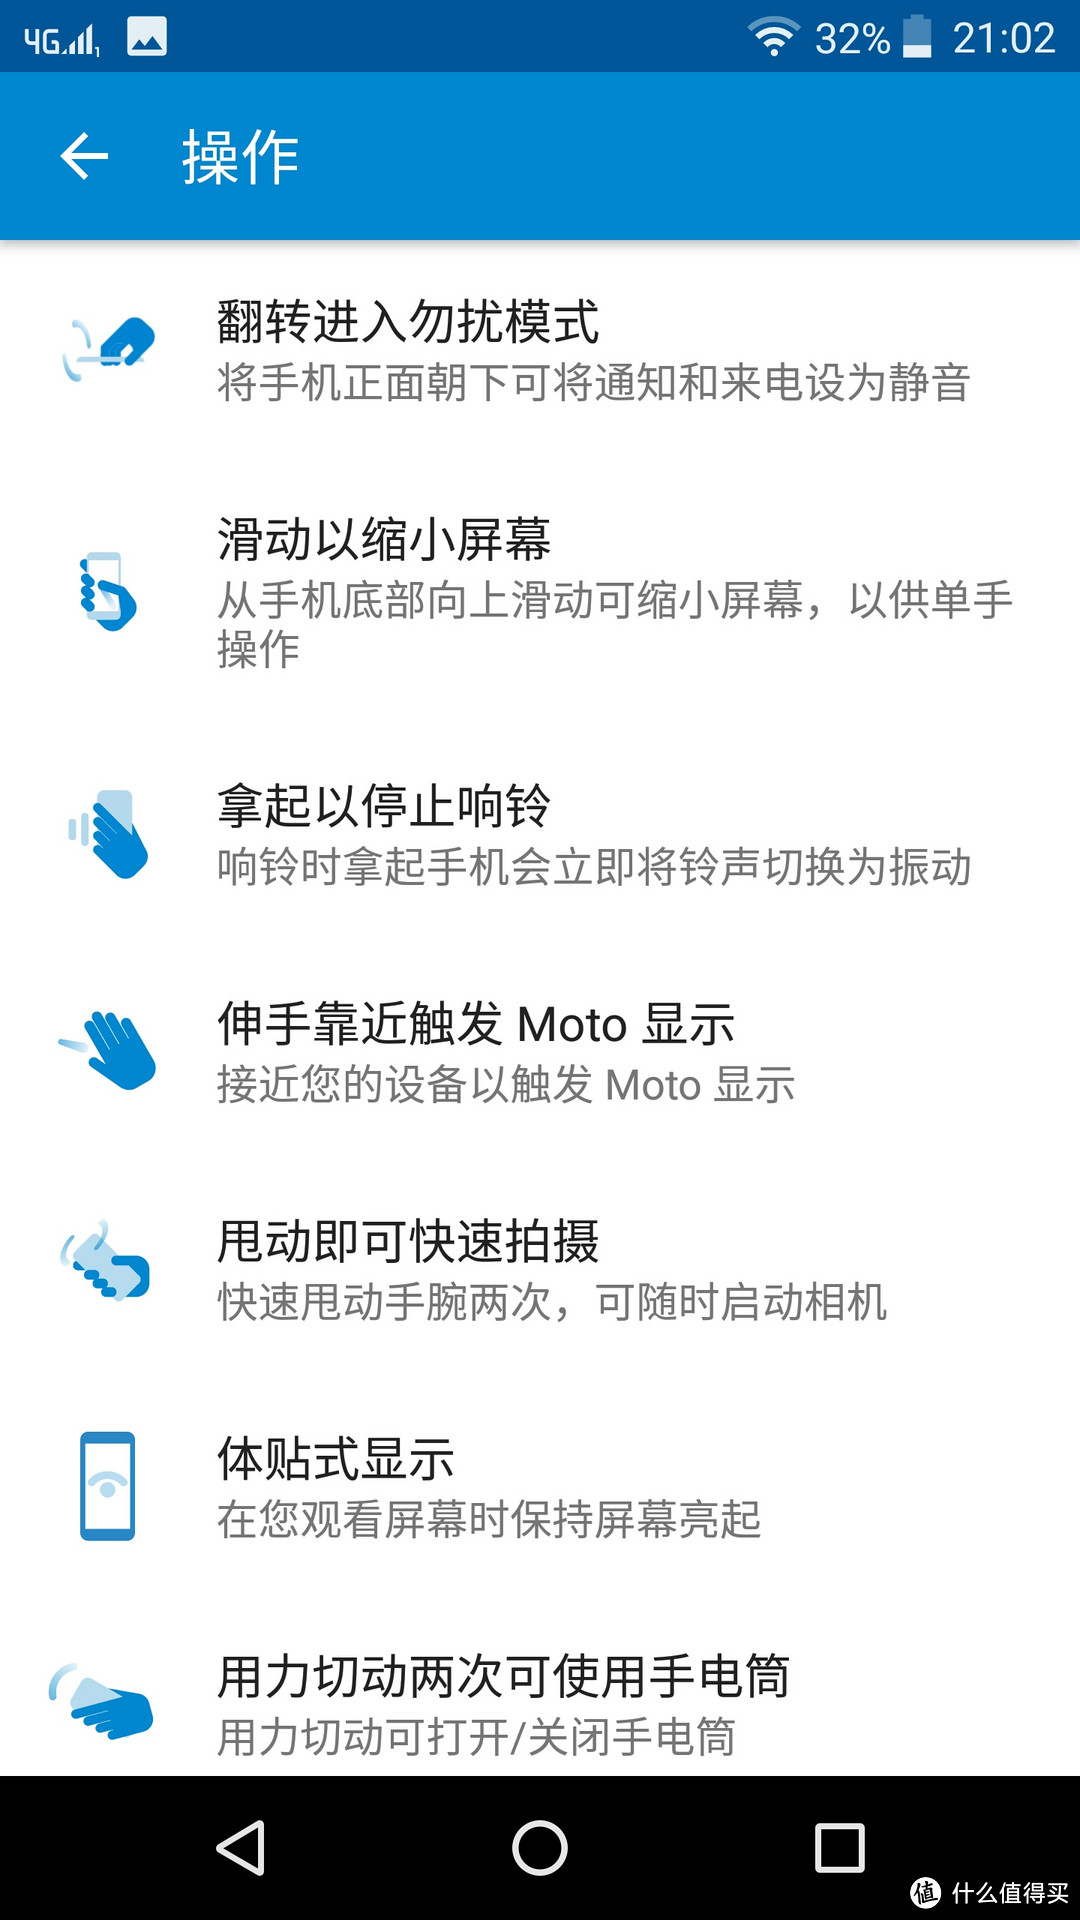 又为情怀买单了——MOTOROLA 摩托罗拉 Moto Z（XT1650）智能手机